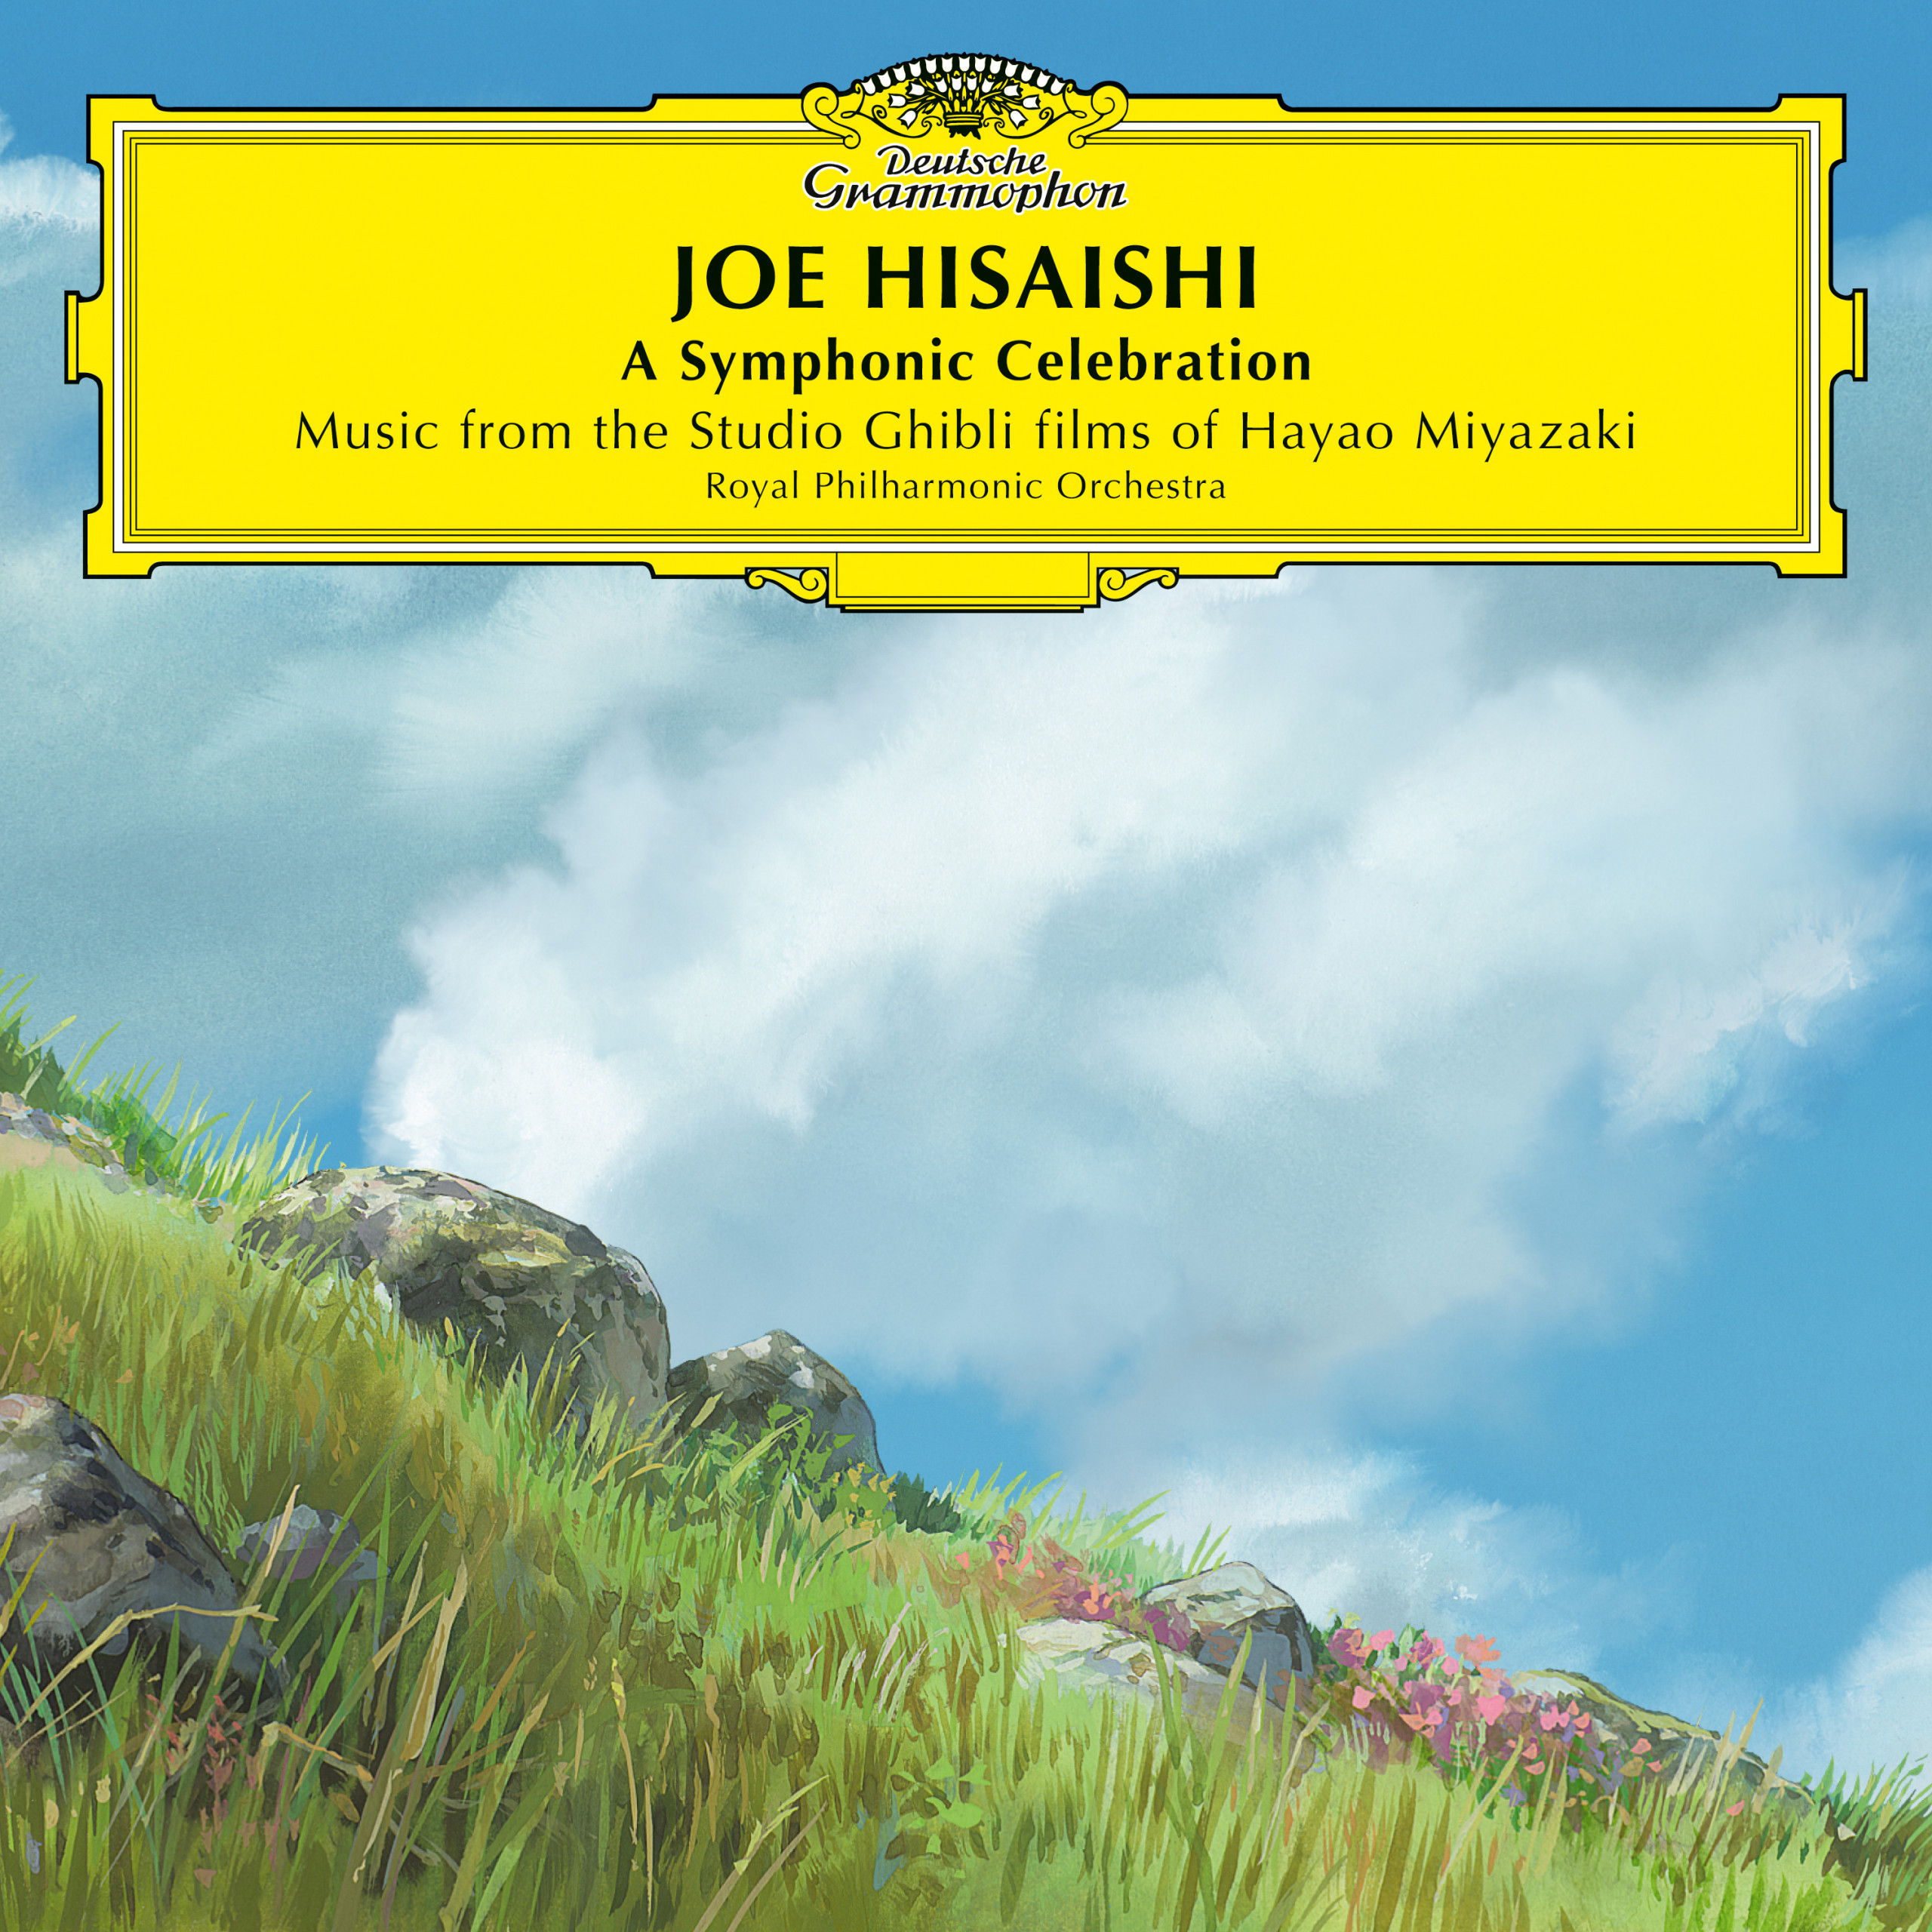 Joe Hisaishi – Video of Vienna 2023 concert + album release – SoundTrackFest